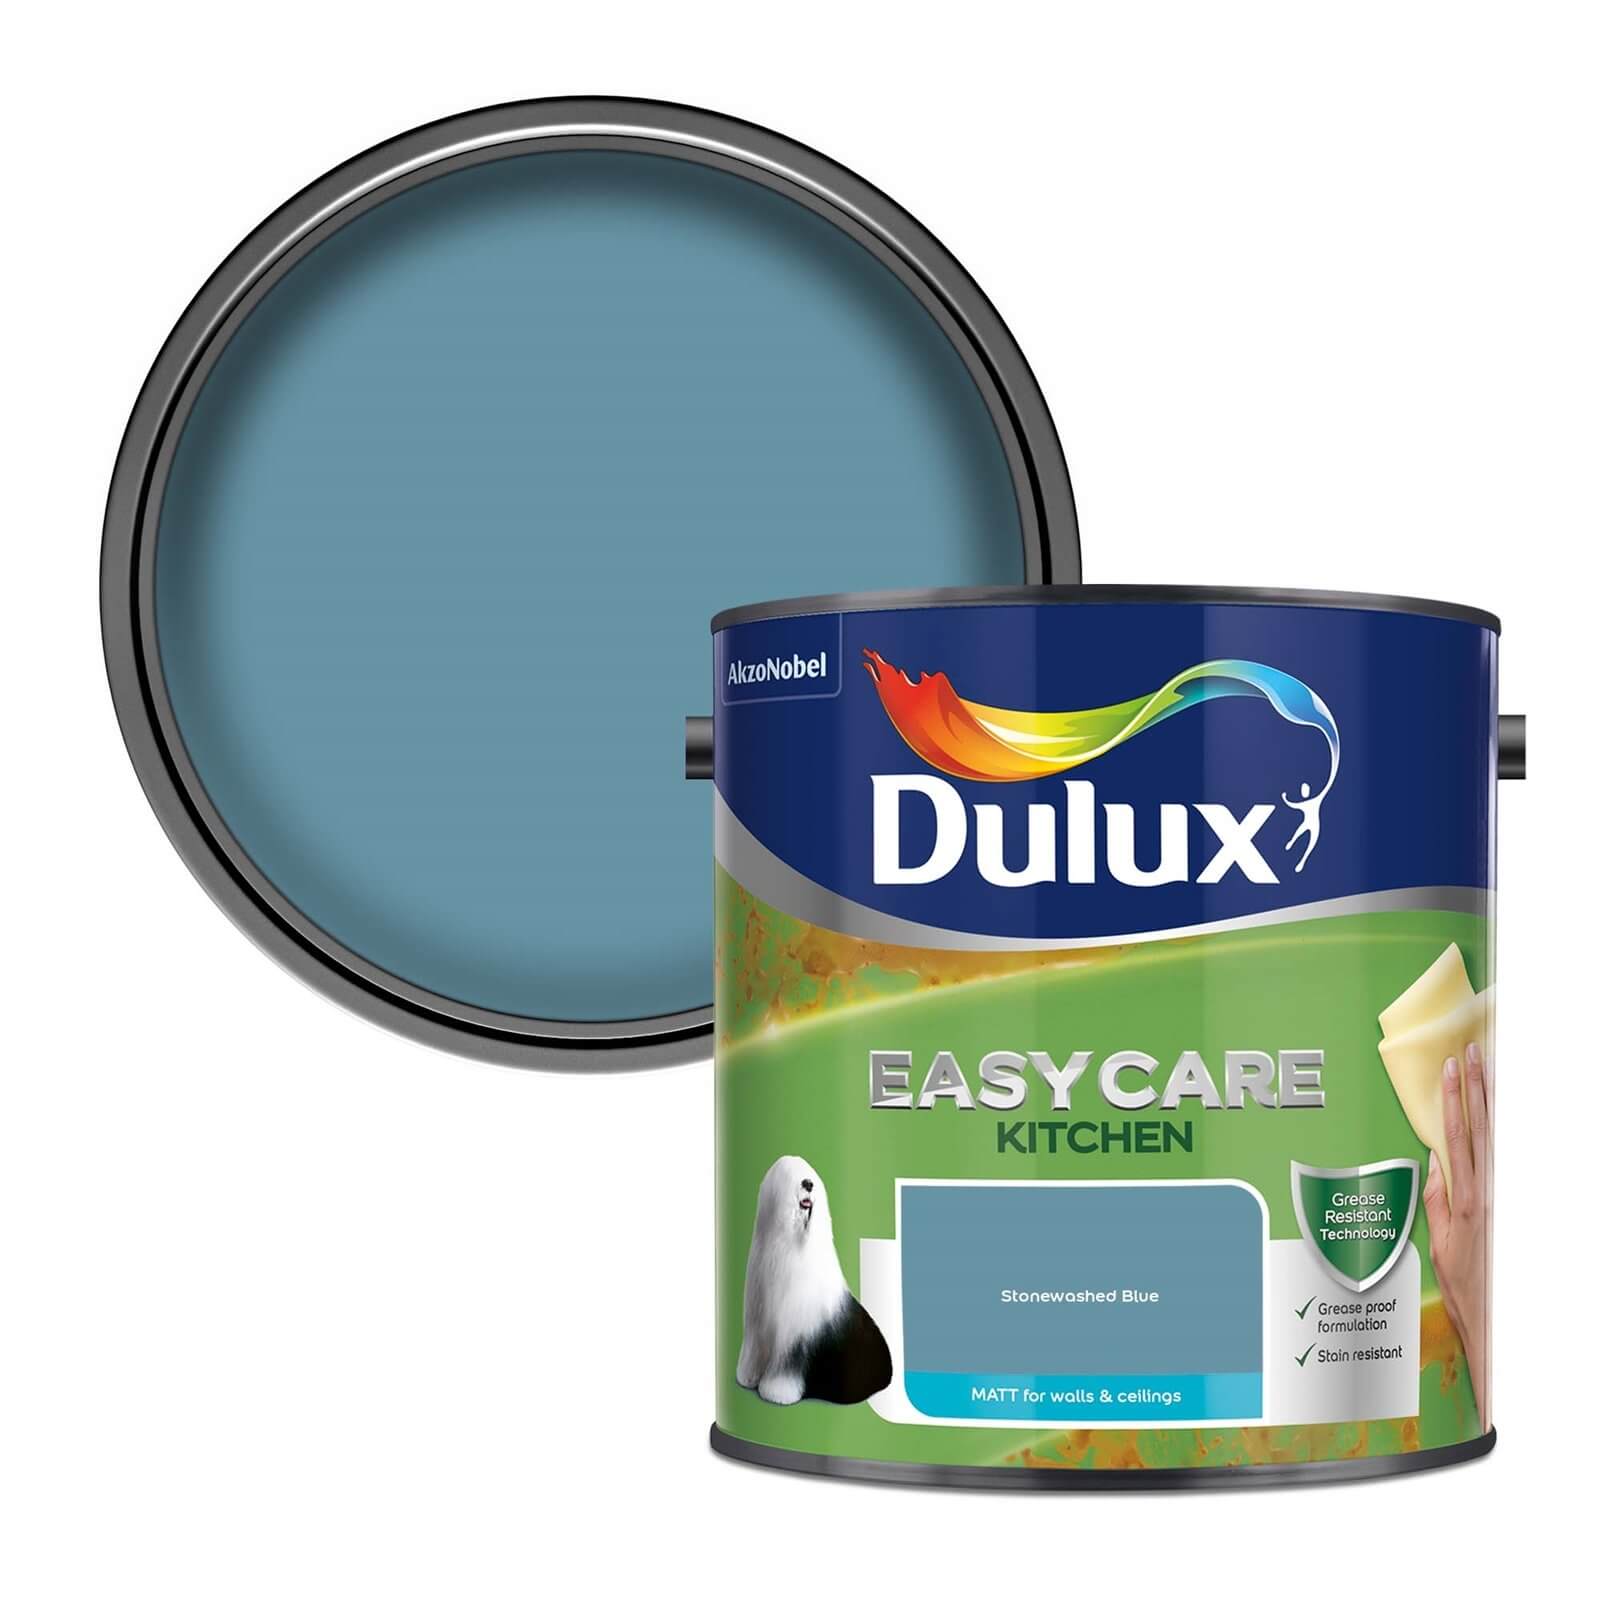 Dulux Easycare Kitchen Stonewashed Blue Matt Paint - 2.5L